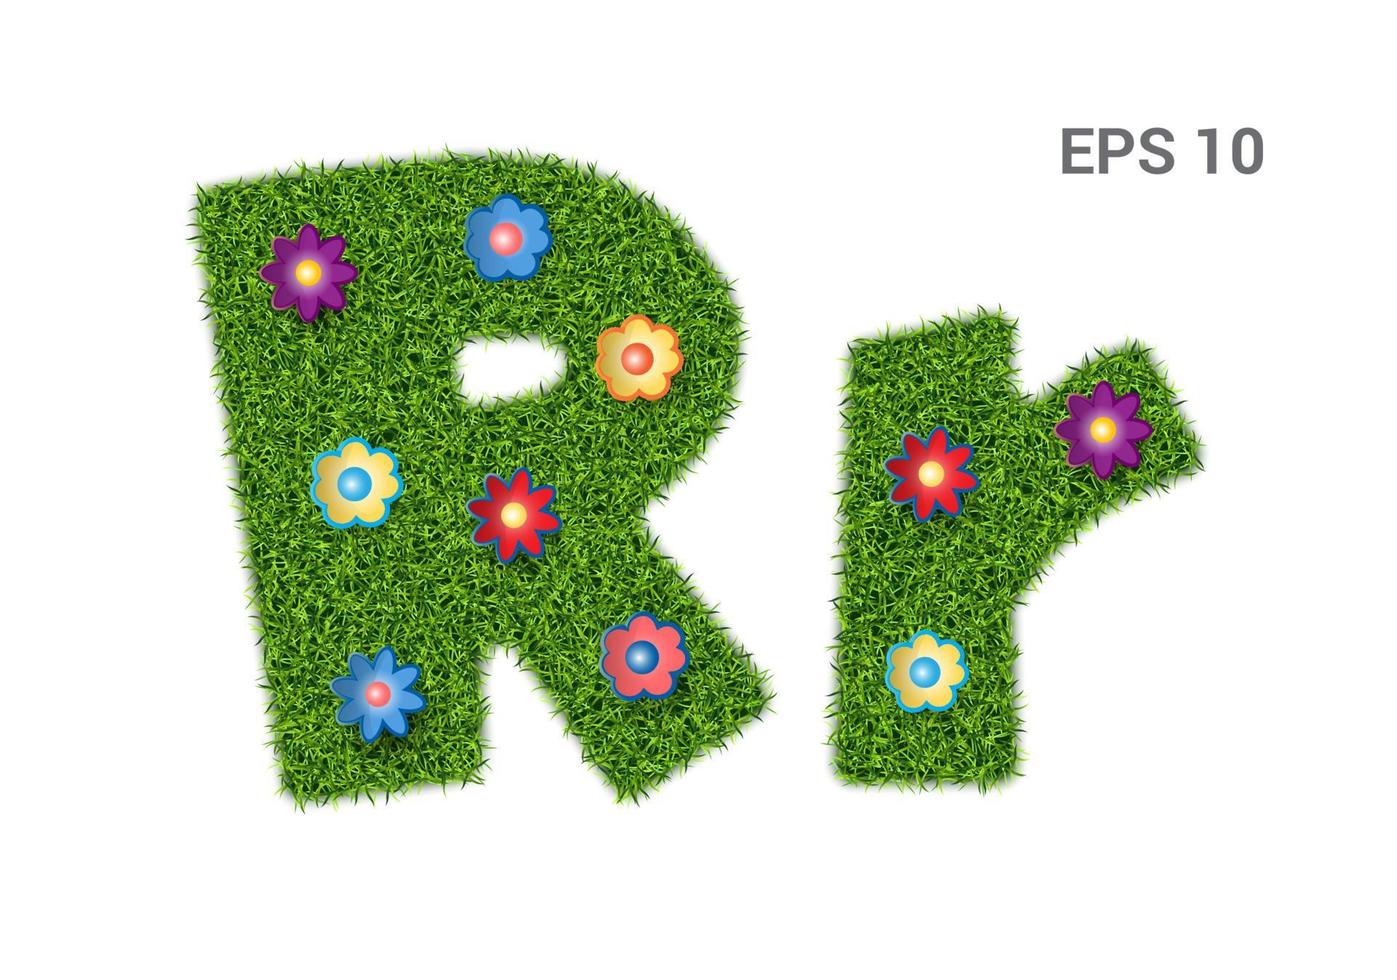 rr - lettere dell'alfabeto con texture erba. prato moresco con fiori. simbolo dell'estate, ecologia. isolato su sfondo bianco. illustrazione vettoriale